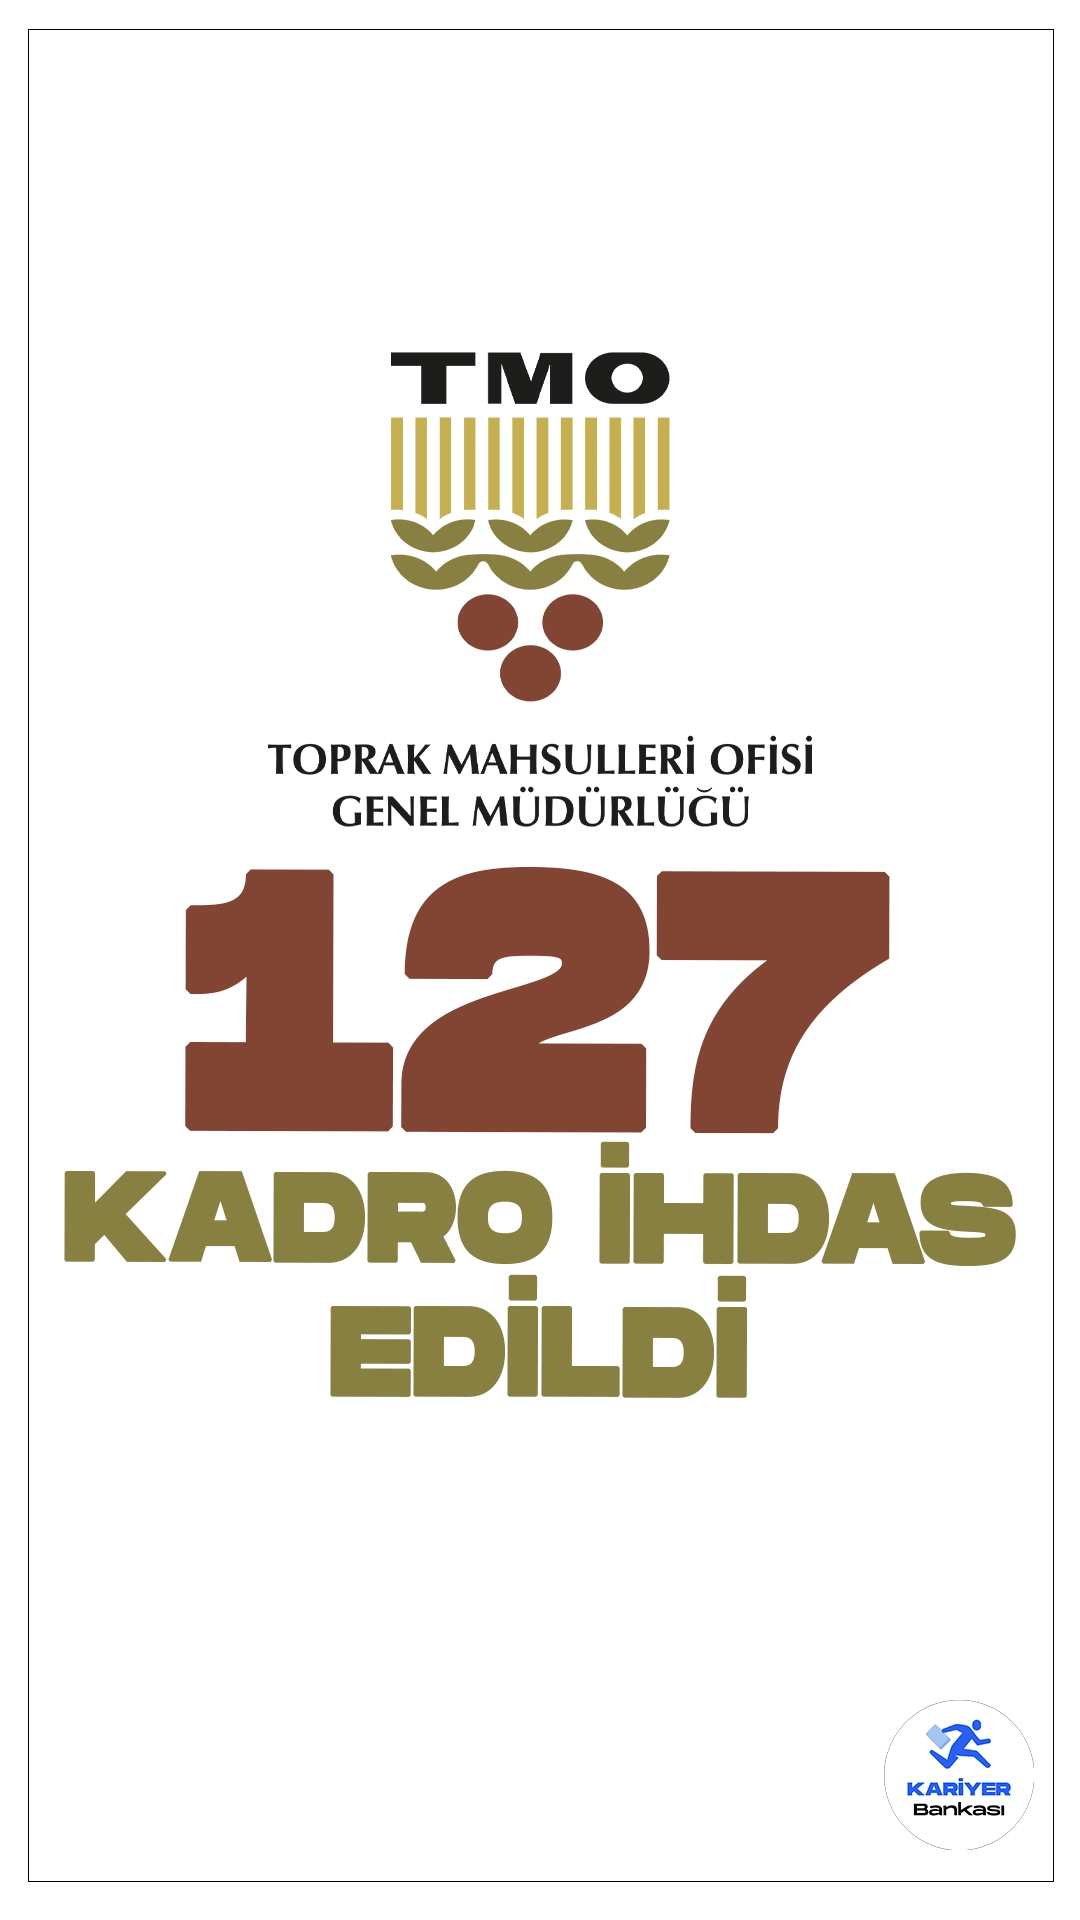 TMO'ya 127 Kadro İhdas Edildi! İşte Detaylar..28 Mayıs tarihli Resmi Gazete’de yayımlanan duyuruda, Cumhurbaşkanı Recep Tayyip Erdoğan’ın imzasıyla, Toprak Mahsulleri Ofisi Genel Müdürlüğü merkez ve taşra teşkilatlarına Başmüfettiş, Müfettiş Yardımcısı, Memur, Anbar Memuru ve Mühendis olmak üzere 127 kadro ihdas edildiği aktarıldı.